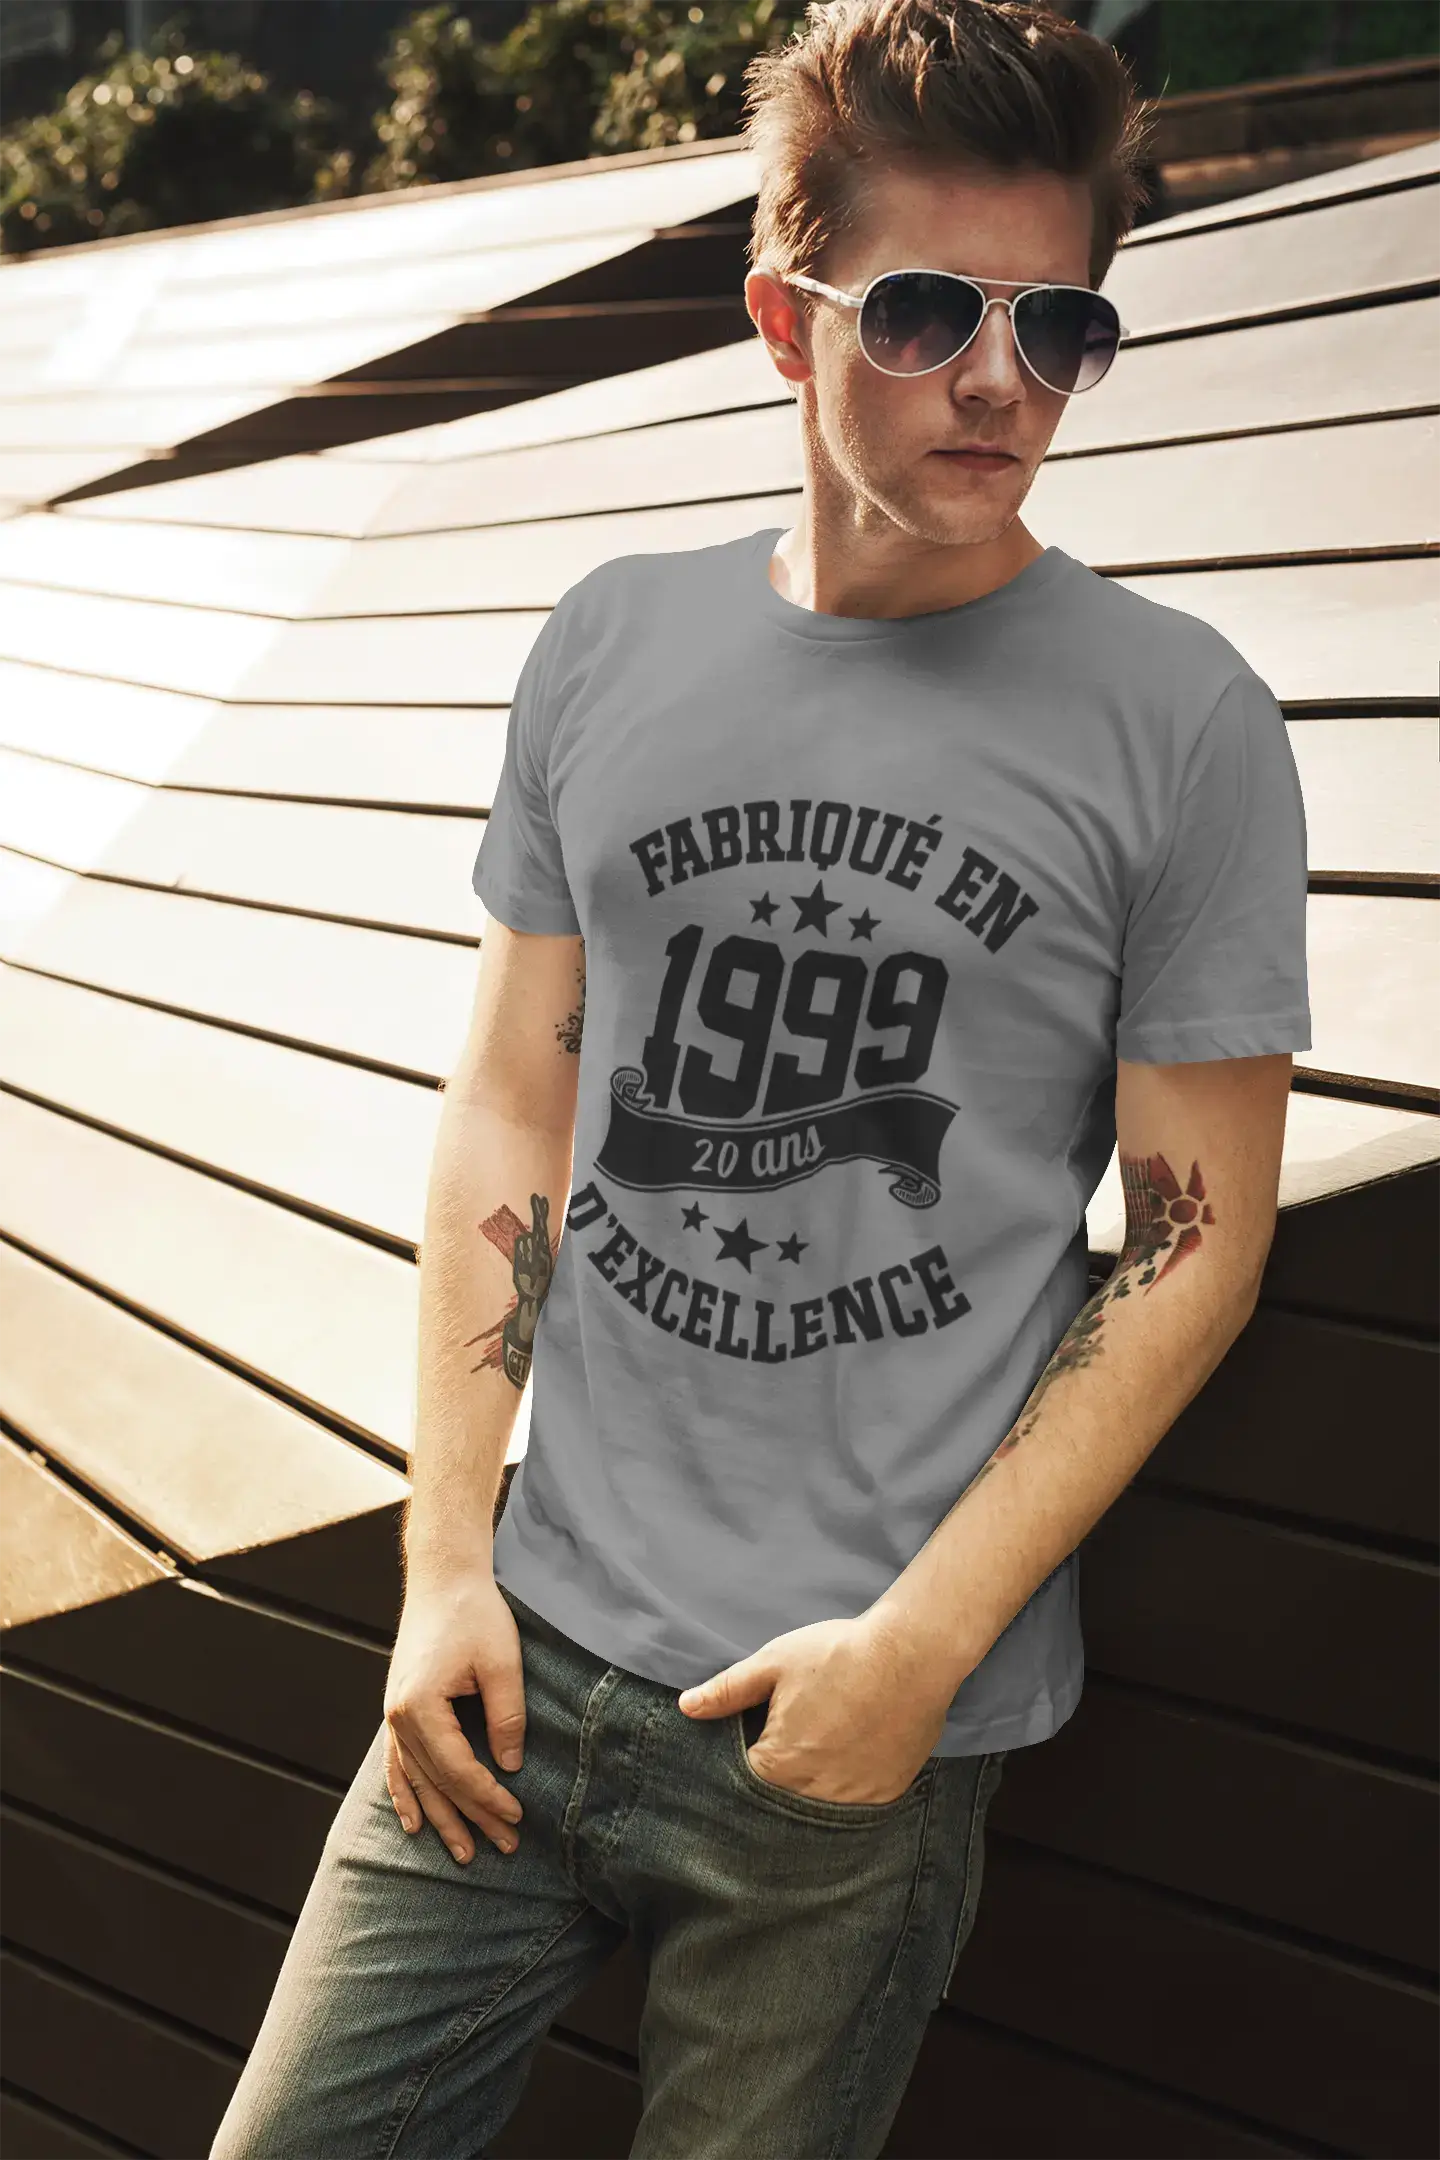 ULTRABASIC - Fabriqué en 1999, 20 Ans d'être Génial Unisex T-Shirt Bordeaux